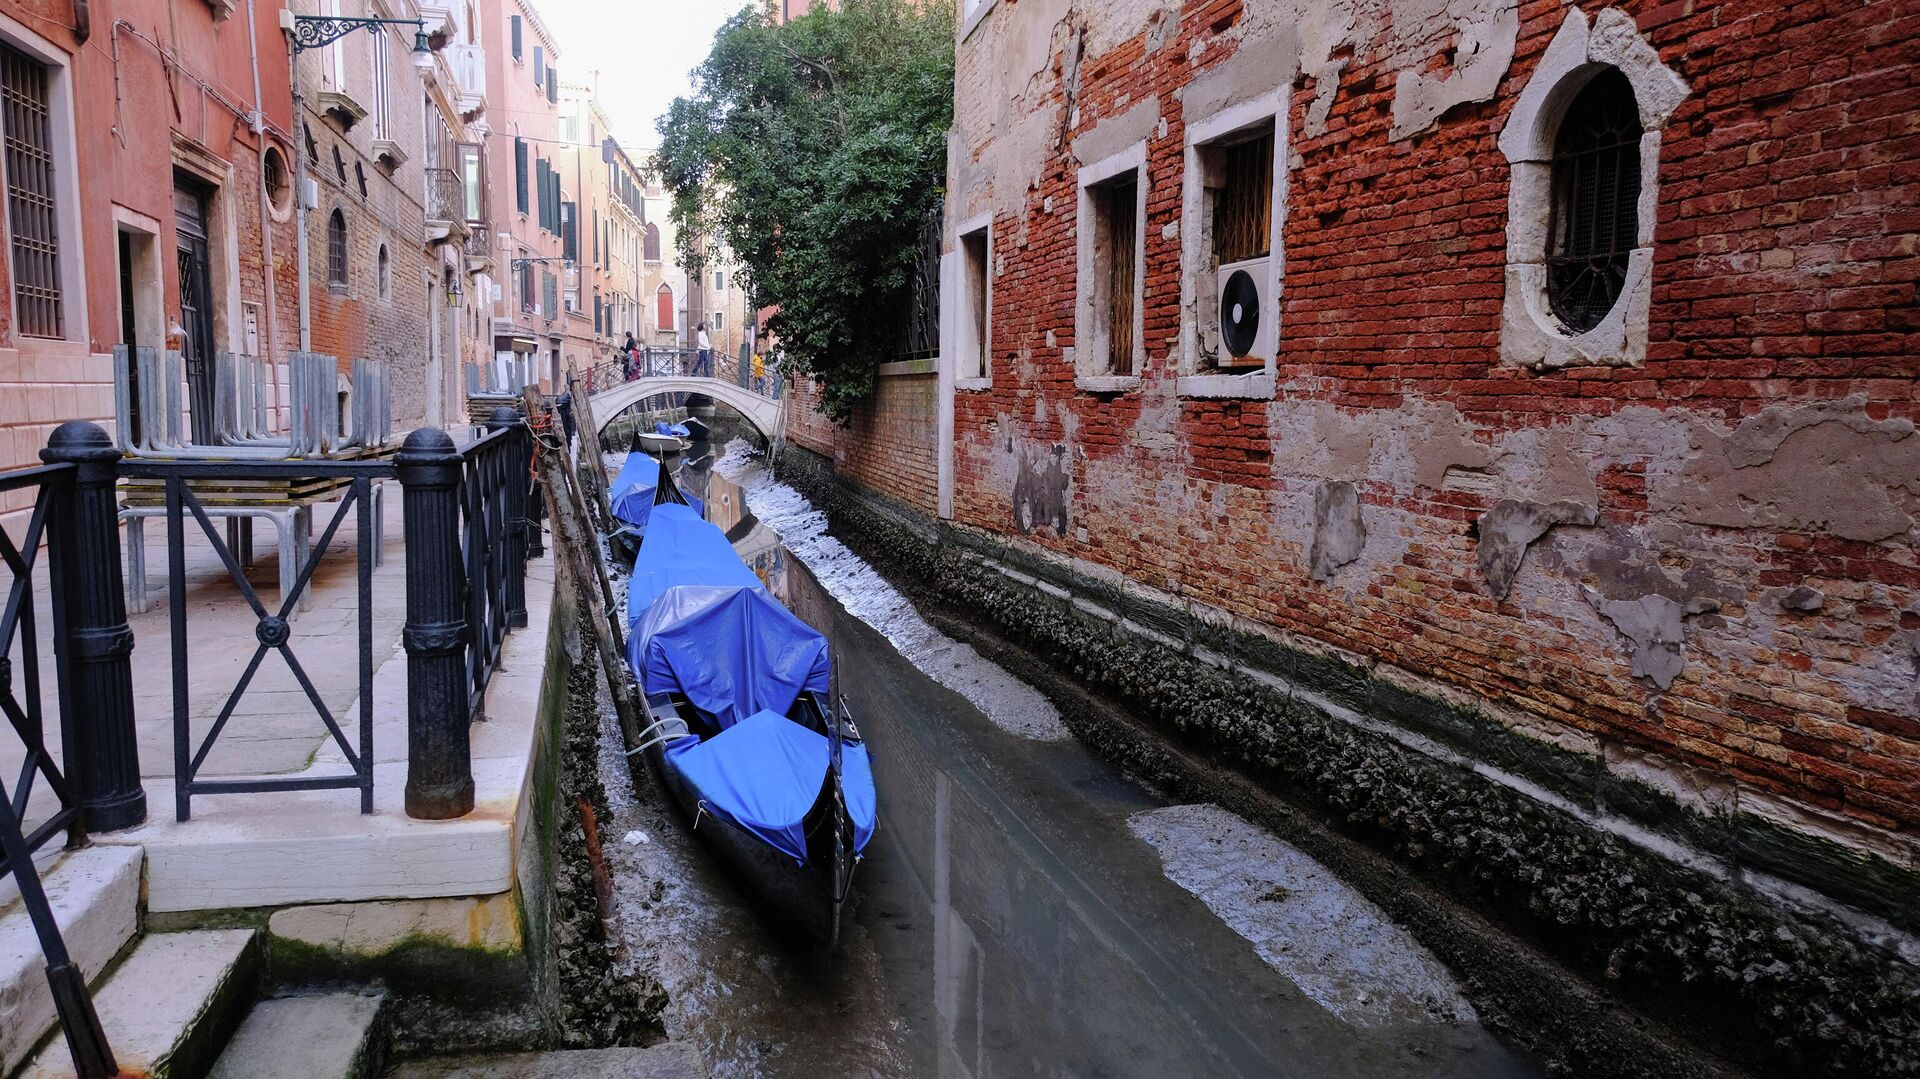 Гондолы в канале во время отлива в Венеции, Италия - РИА Новости, 1920, 01.03.2021